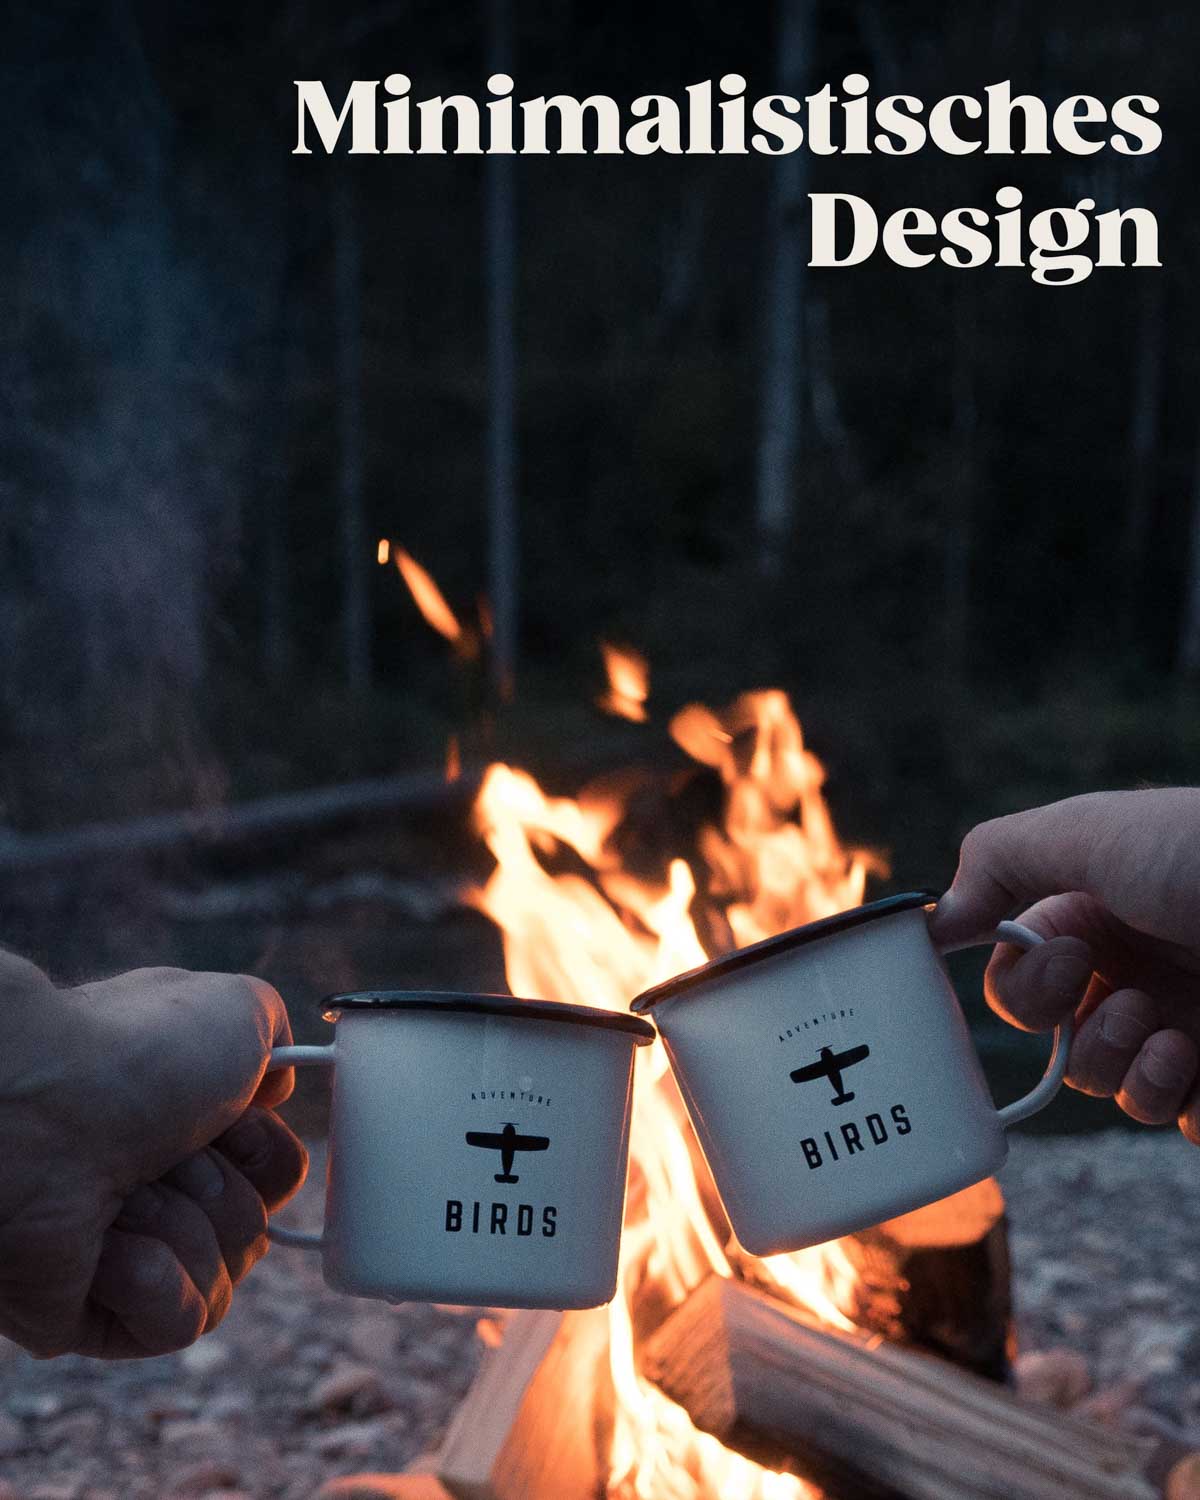 Zwei BIRDS Tassen stoßen vor einem knisternden Lagerfeuer an. Das minimalistische Design der Tassen, gekennzeichnet durch die Kontraste von Schwarz und Weiß sowie das schlichte Logo, verleiht ihnen eine elegante Ausstrahlung.